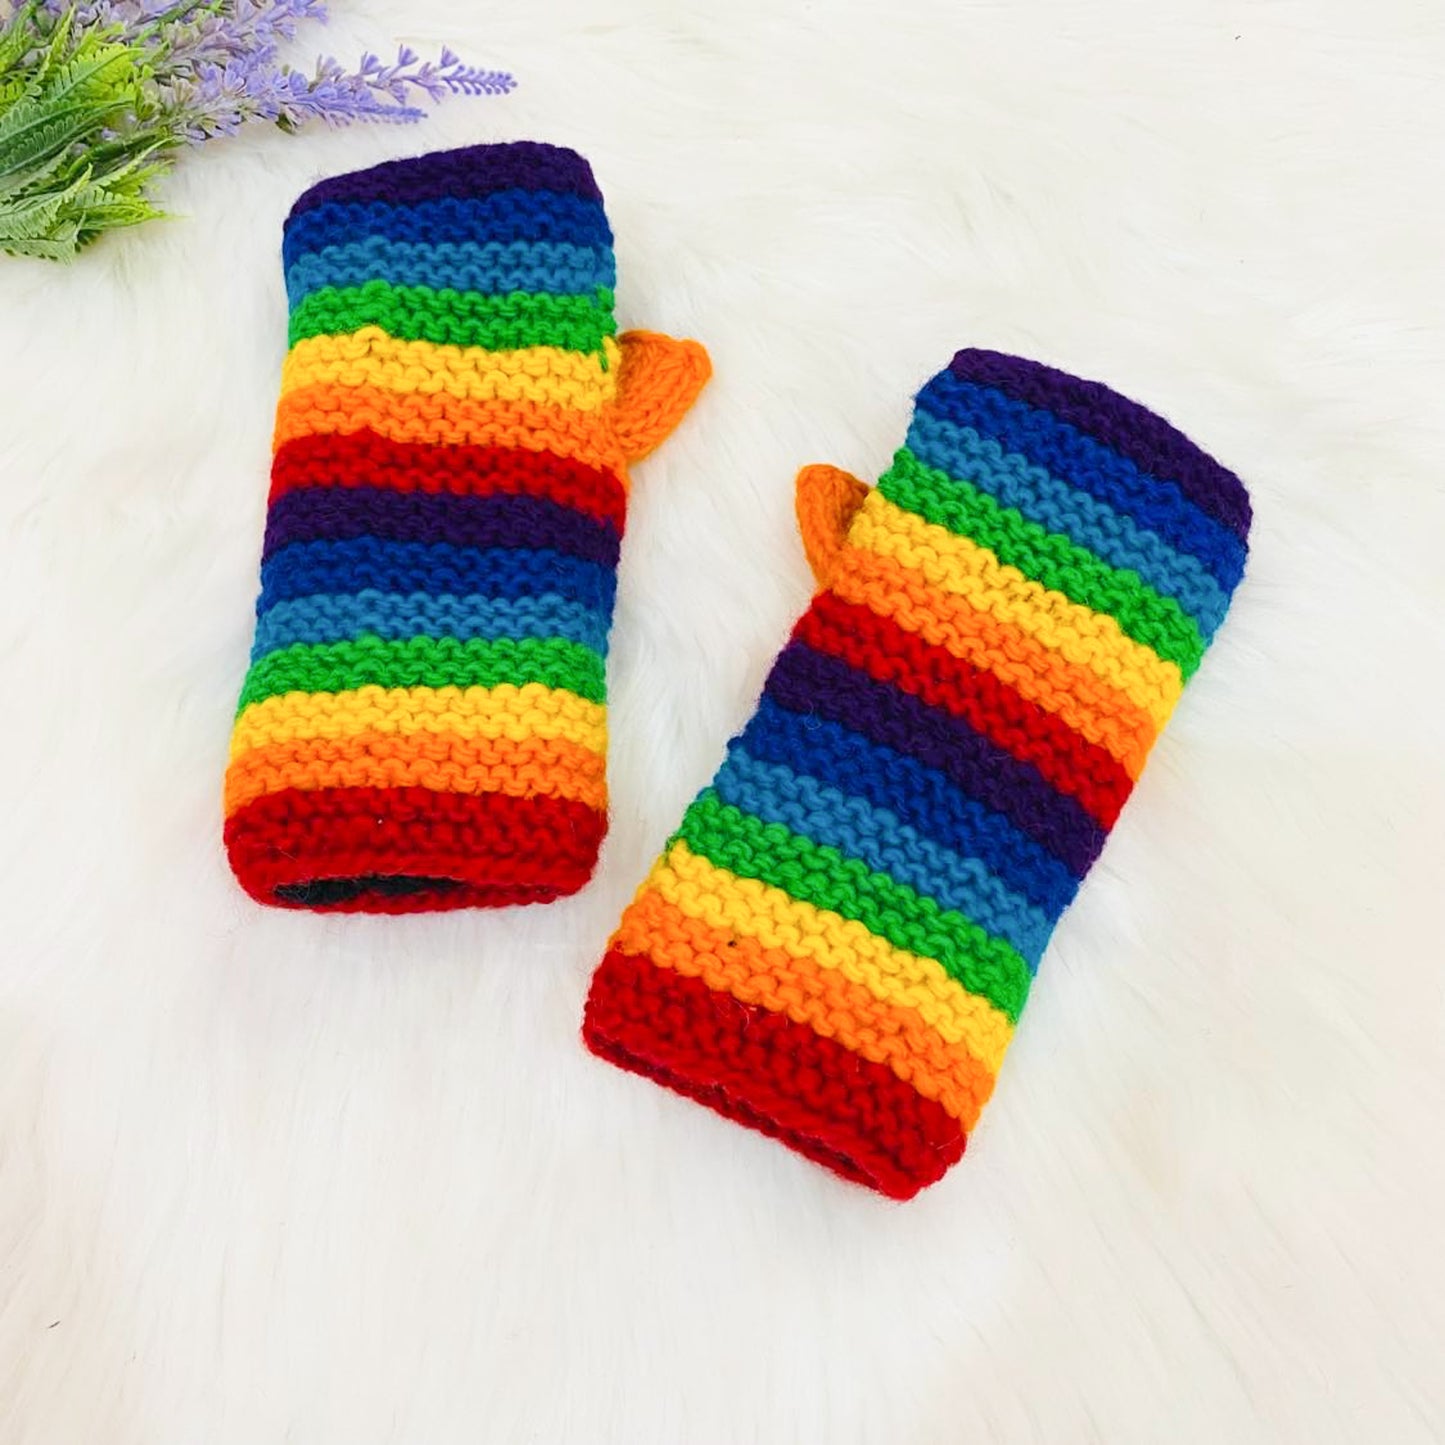 Hand Knitted Rainbow Fingerless Gloves